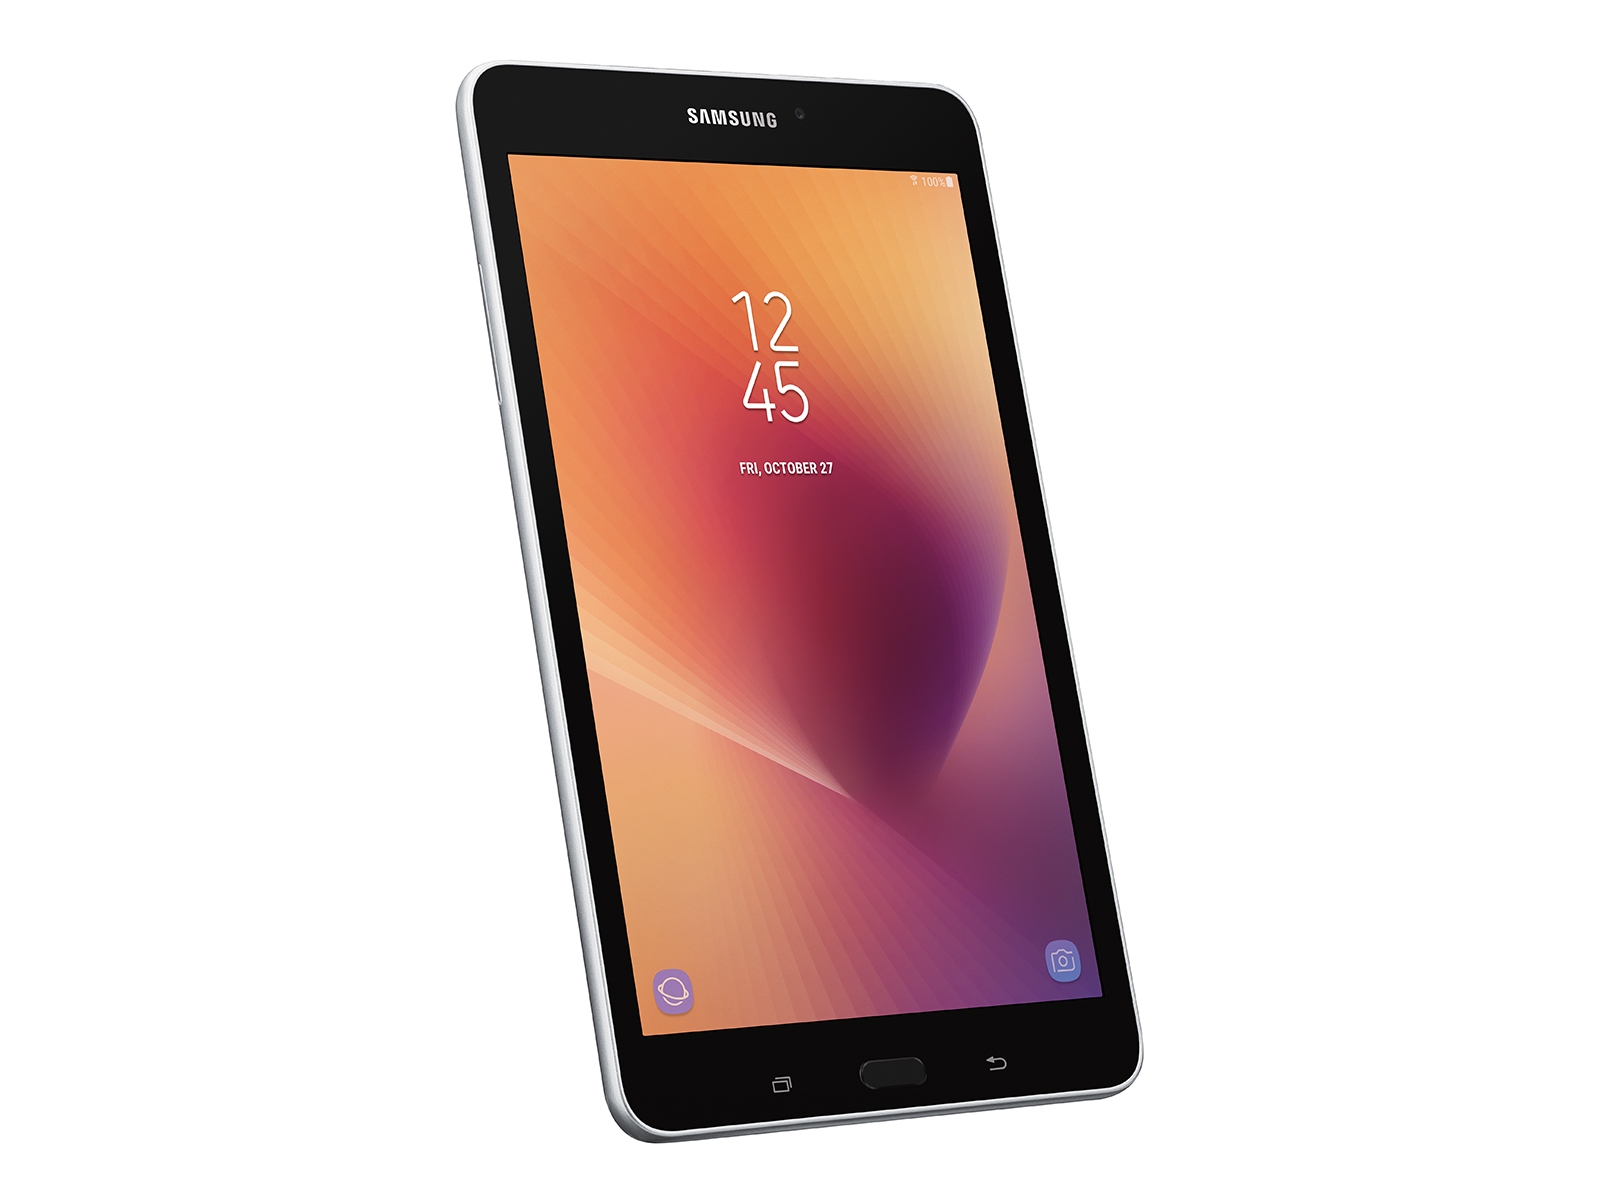 Samsung Galaxy A8 -  External Reviews